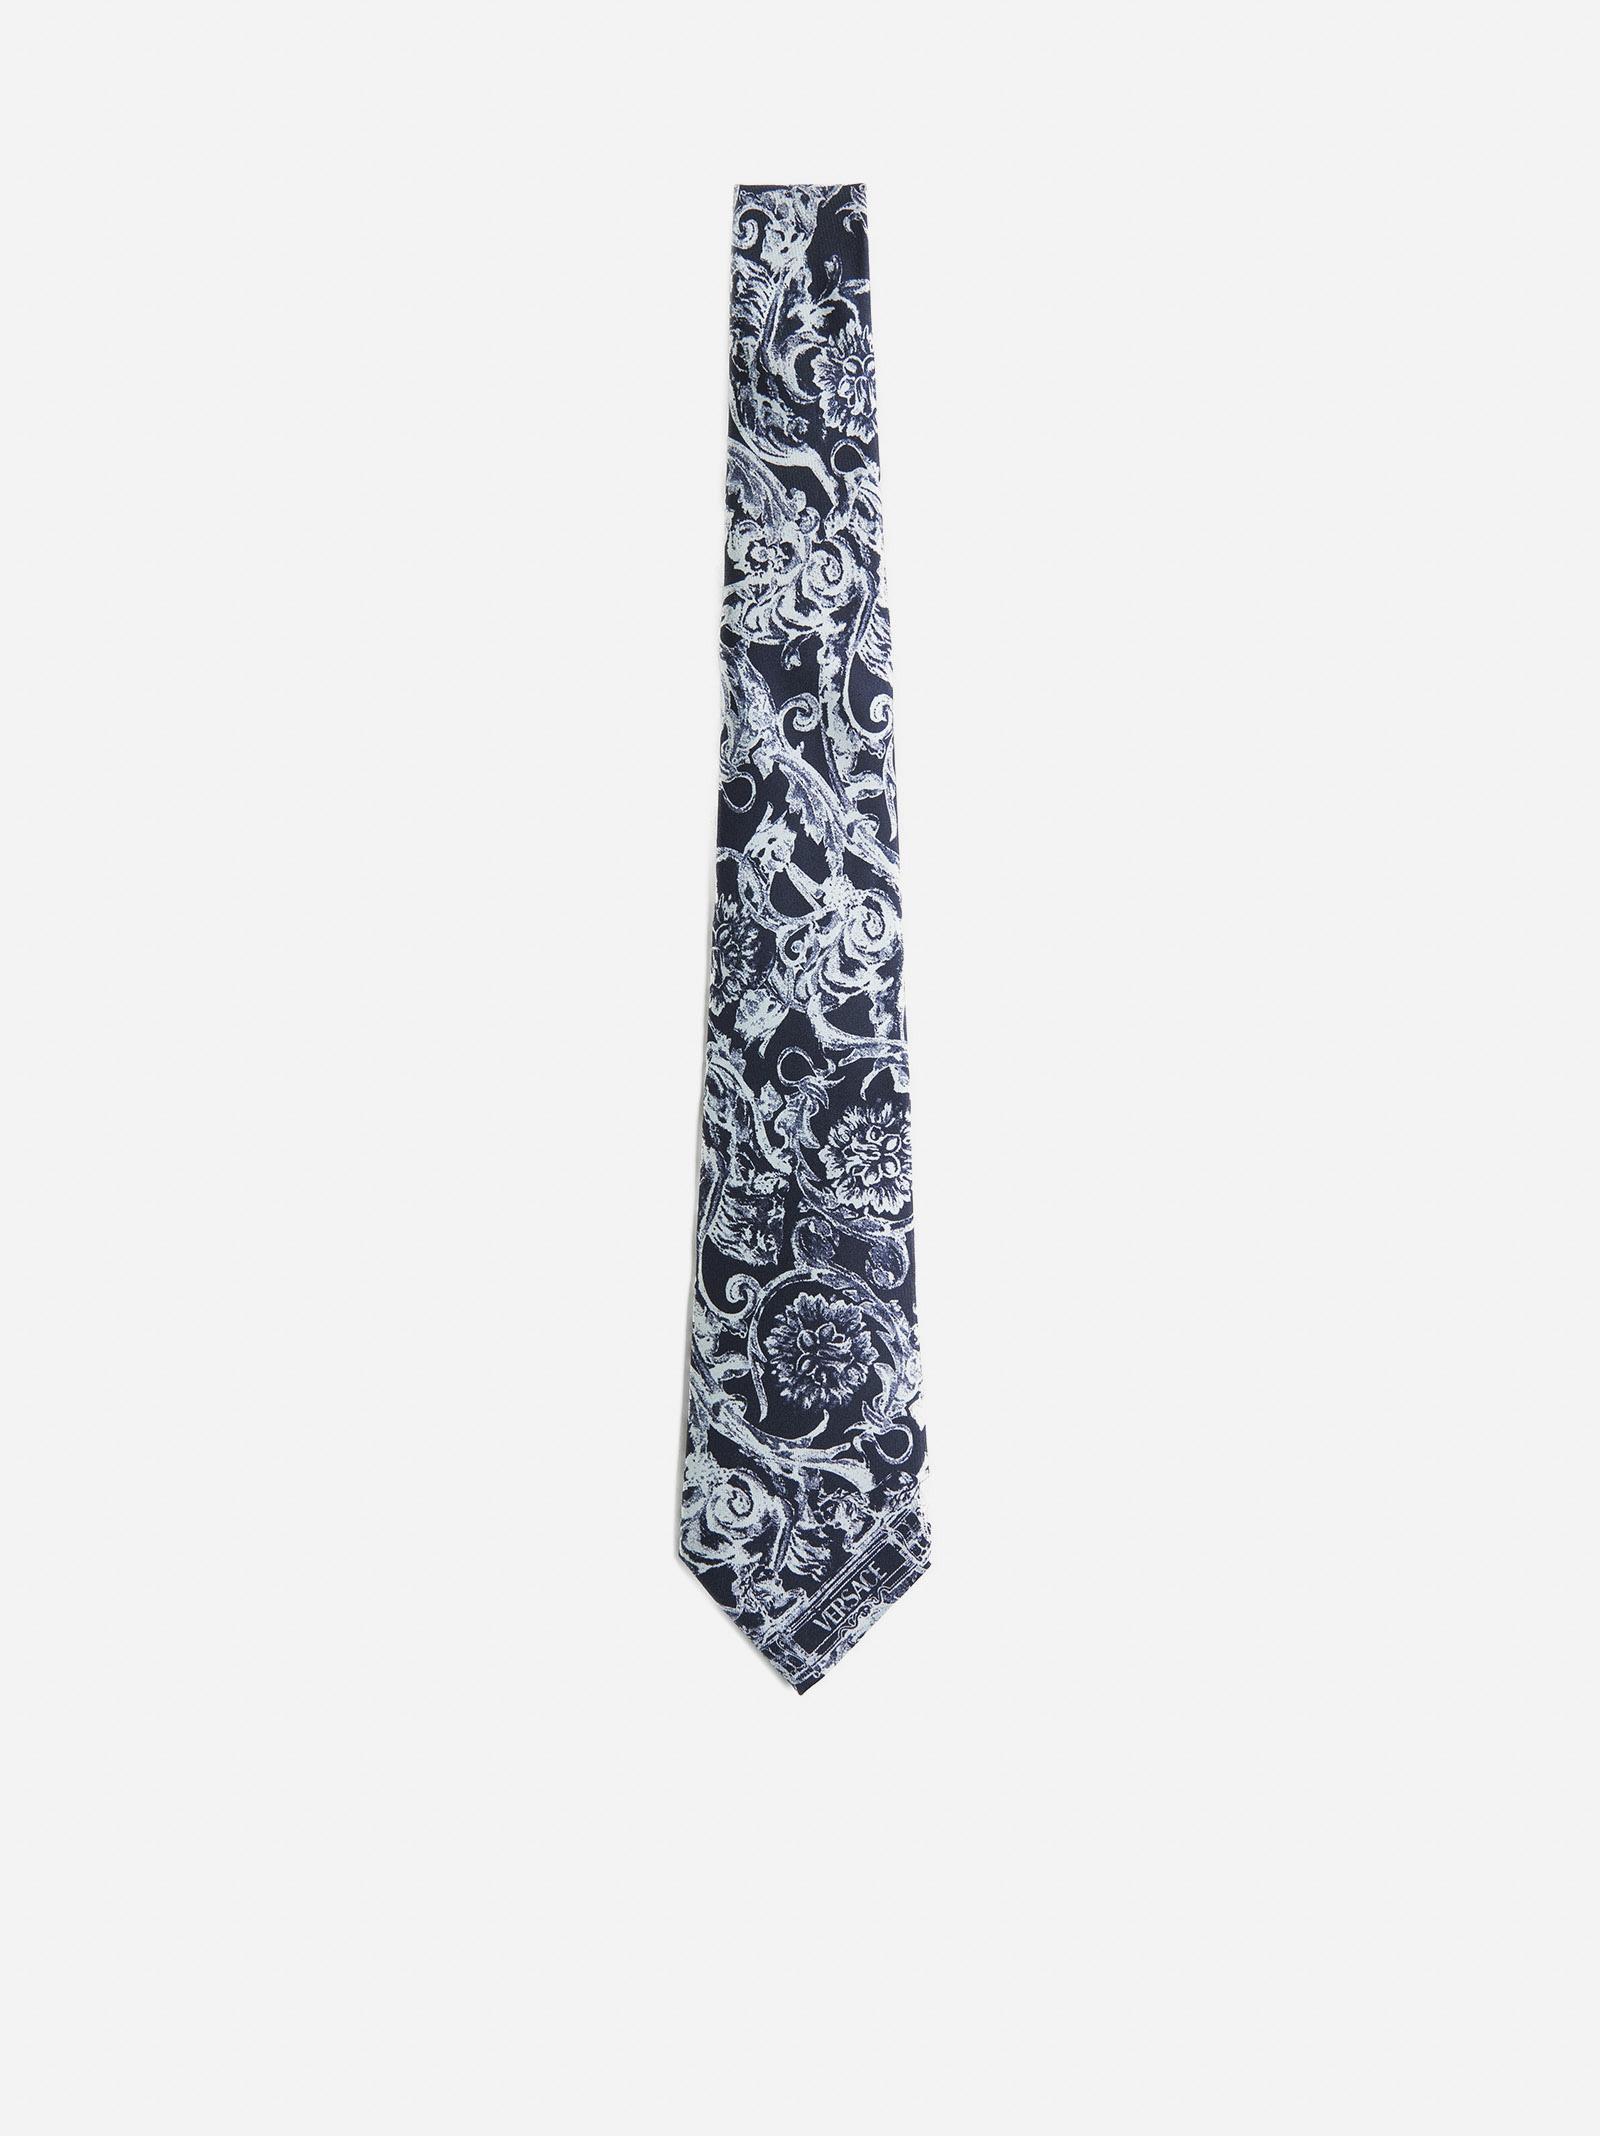 Barocco-print silk tie, Versace